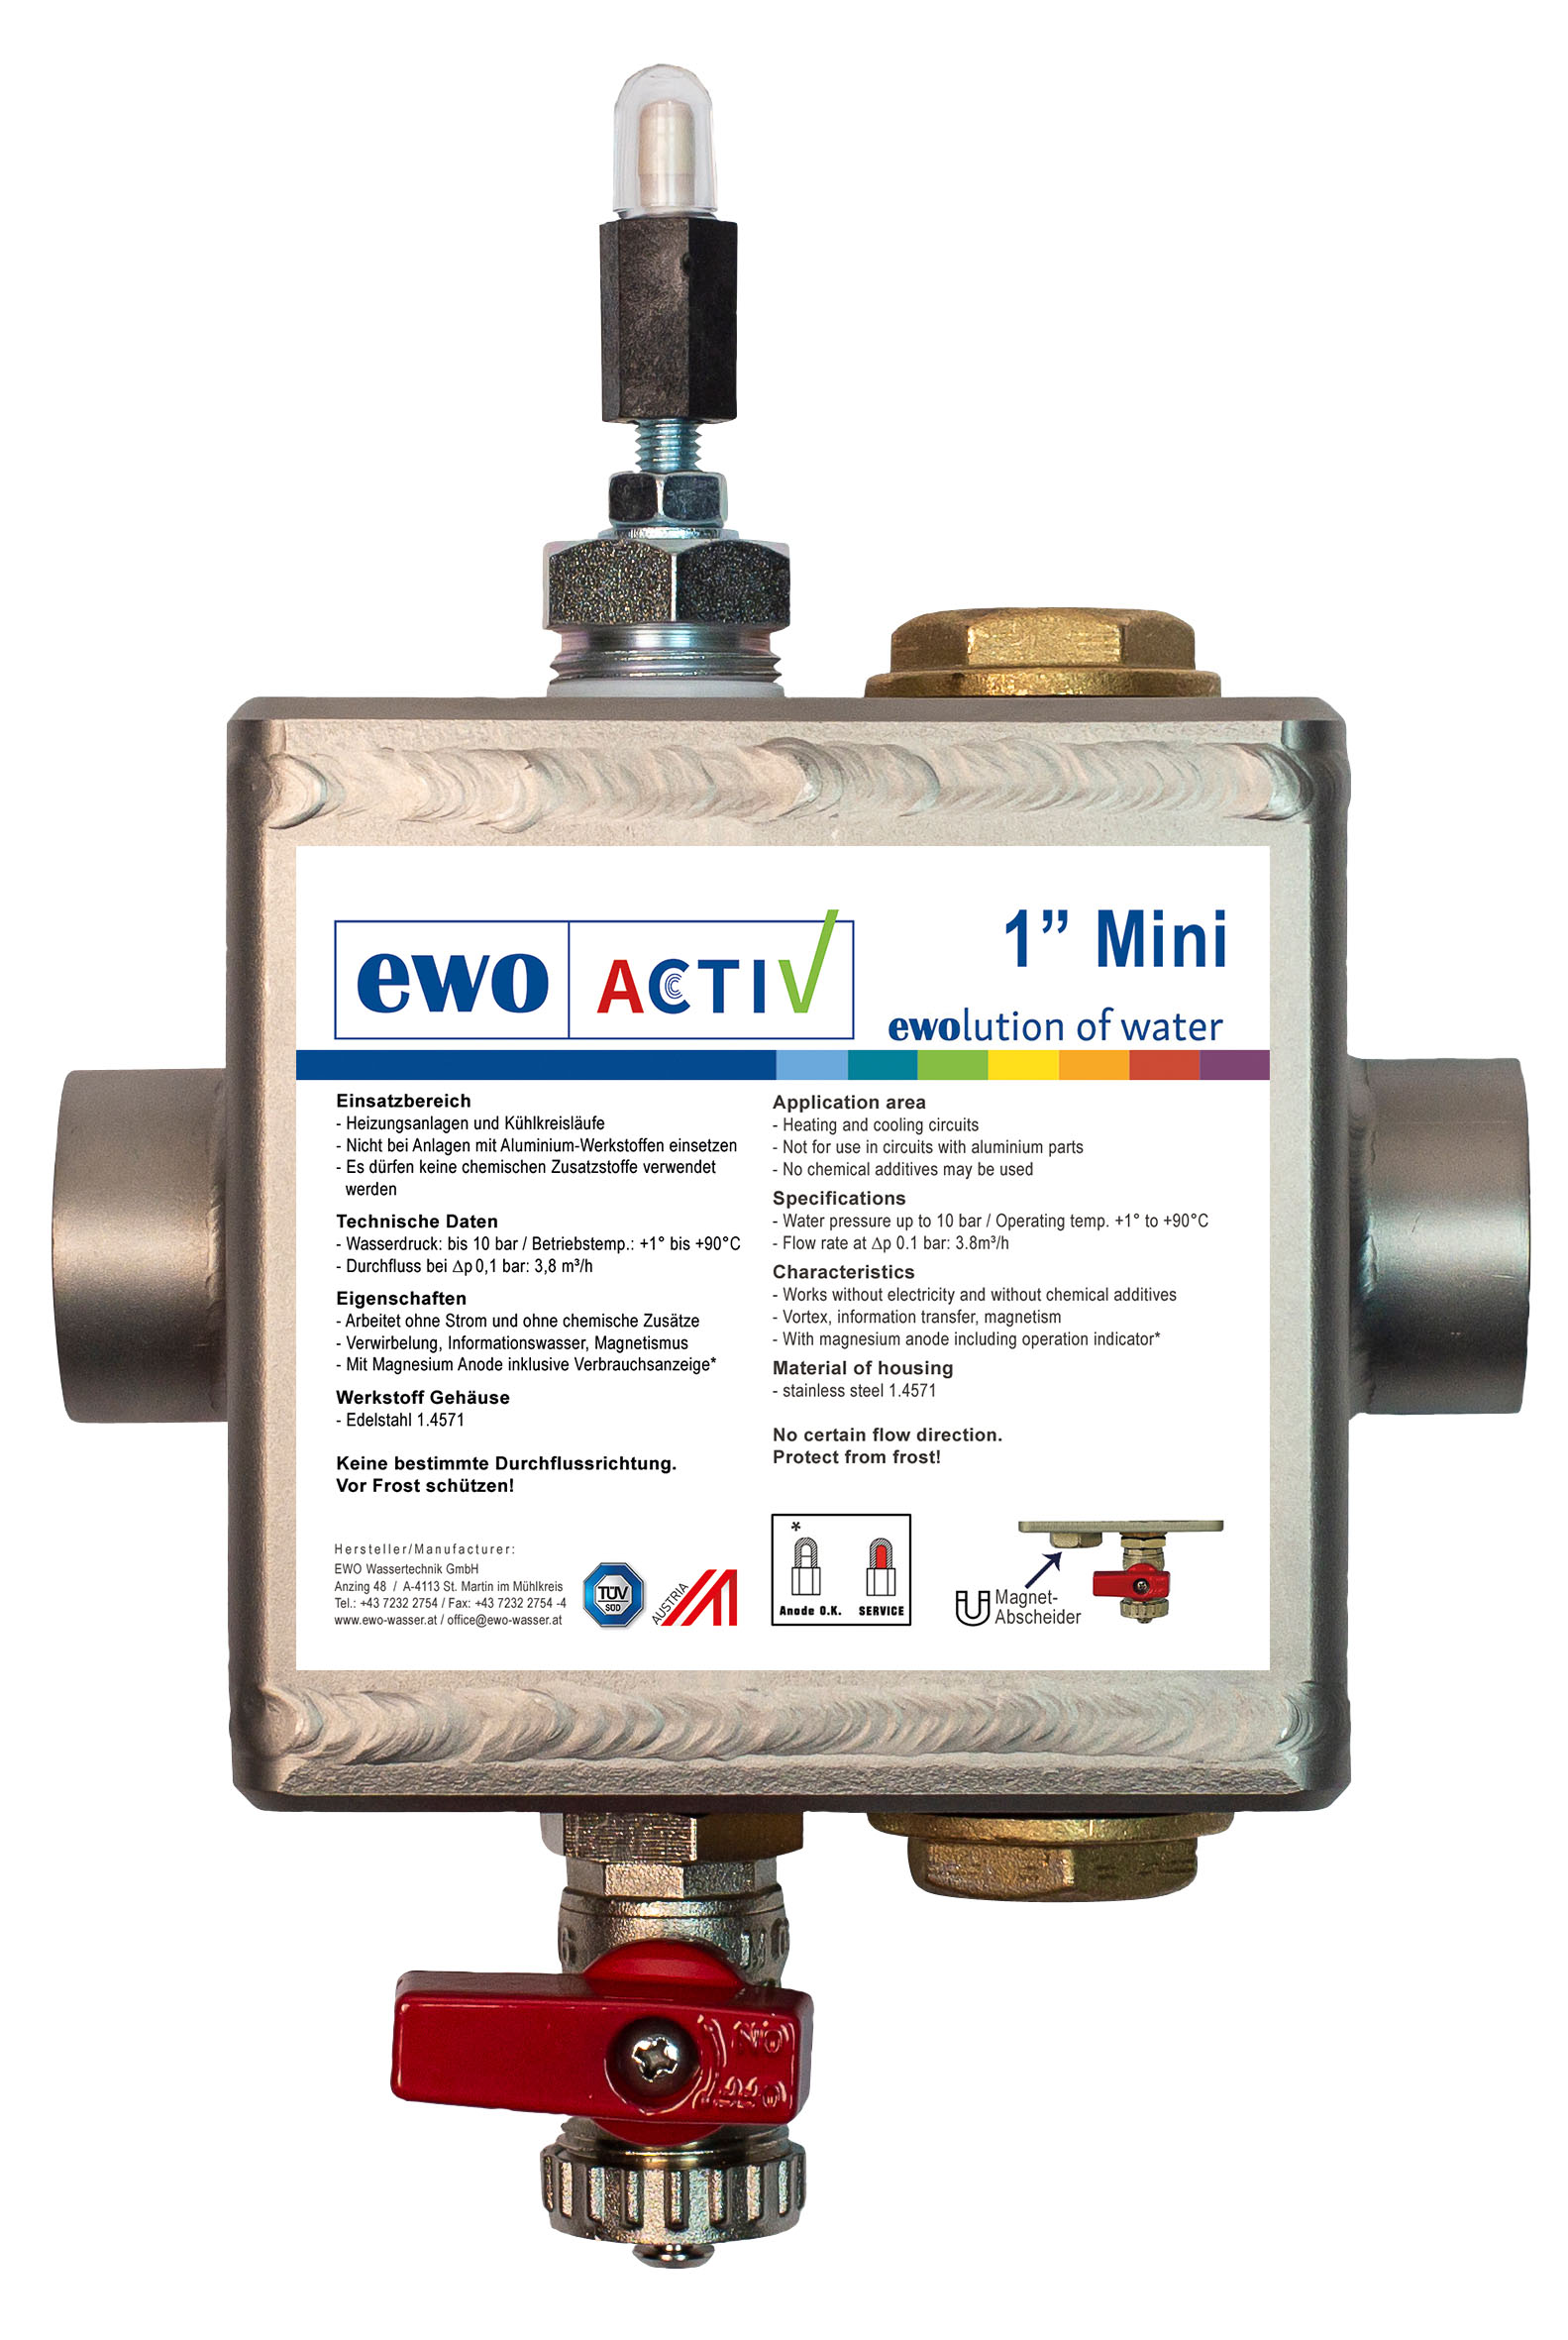 EWO ACTIV 1“ Mini Einbau- und Bedienungsanleitung